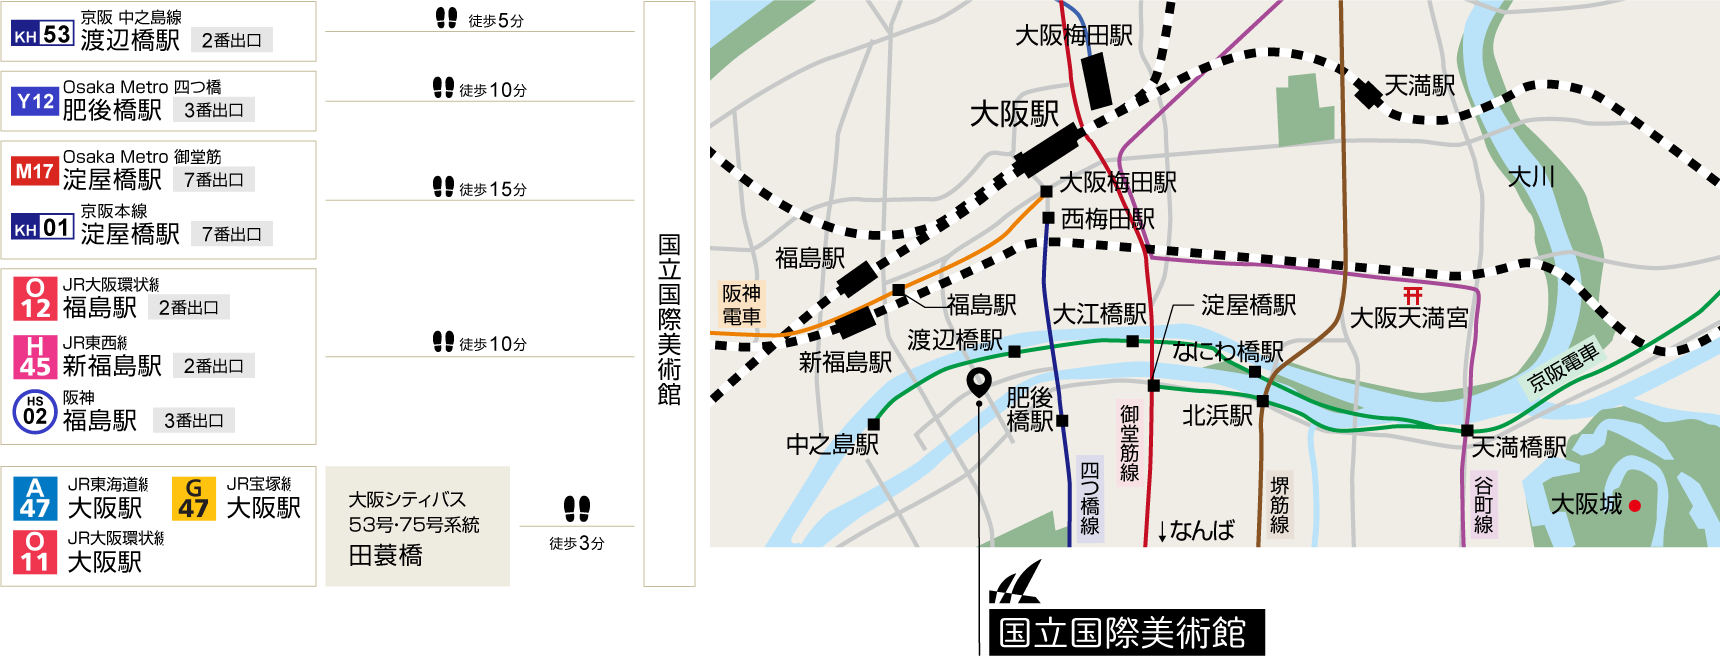 大阪マップ画像